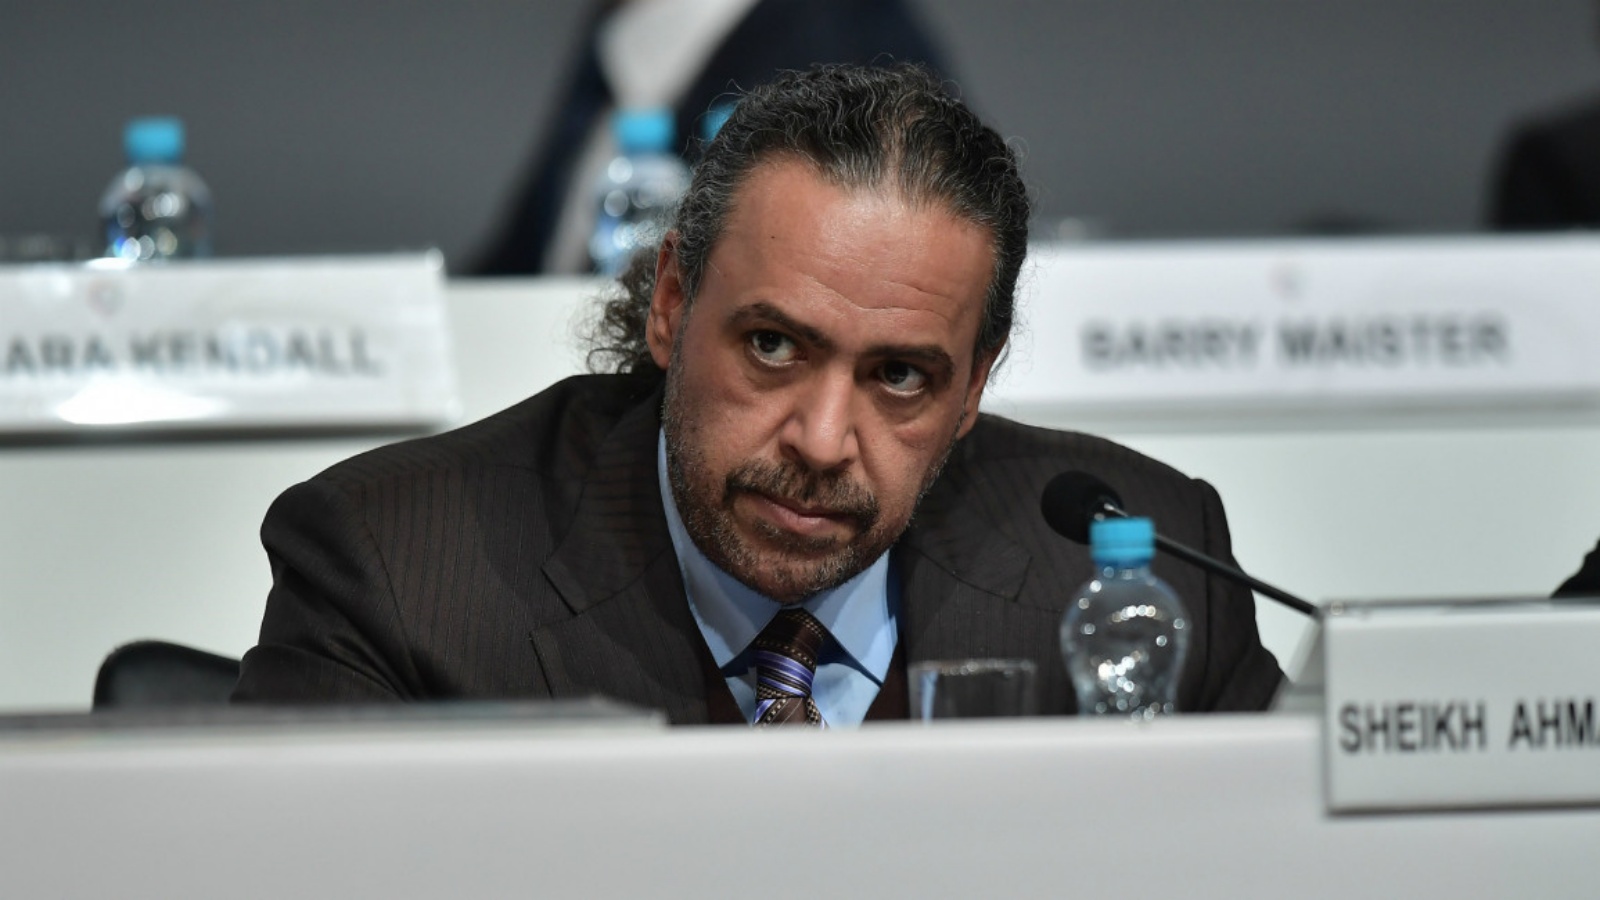 الشيخ أحمد الفهد الصباح من أقوى المسؤولين في الرياضة العالمية